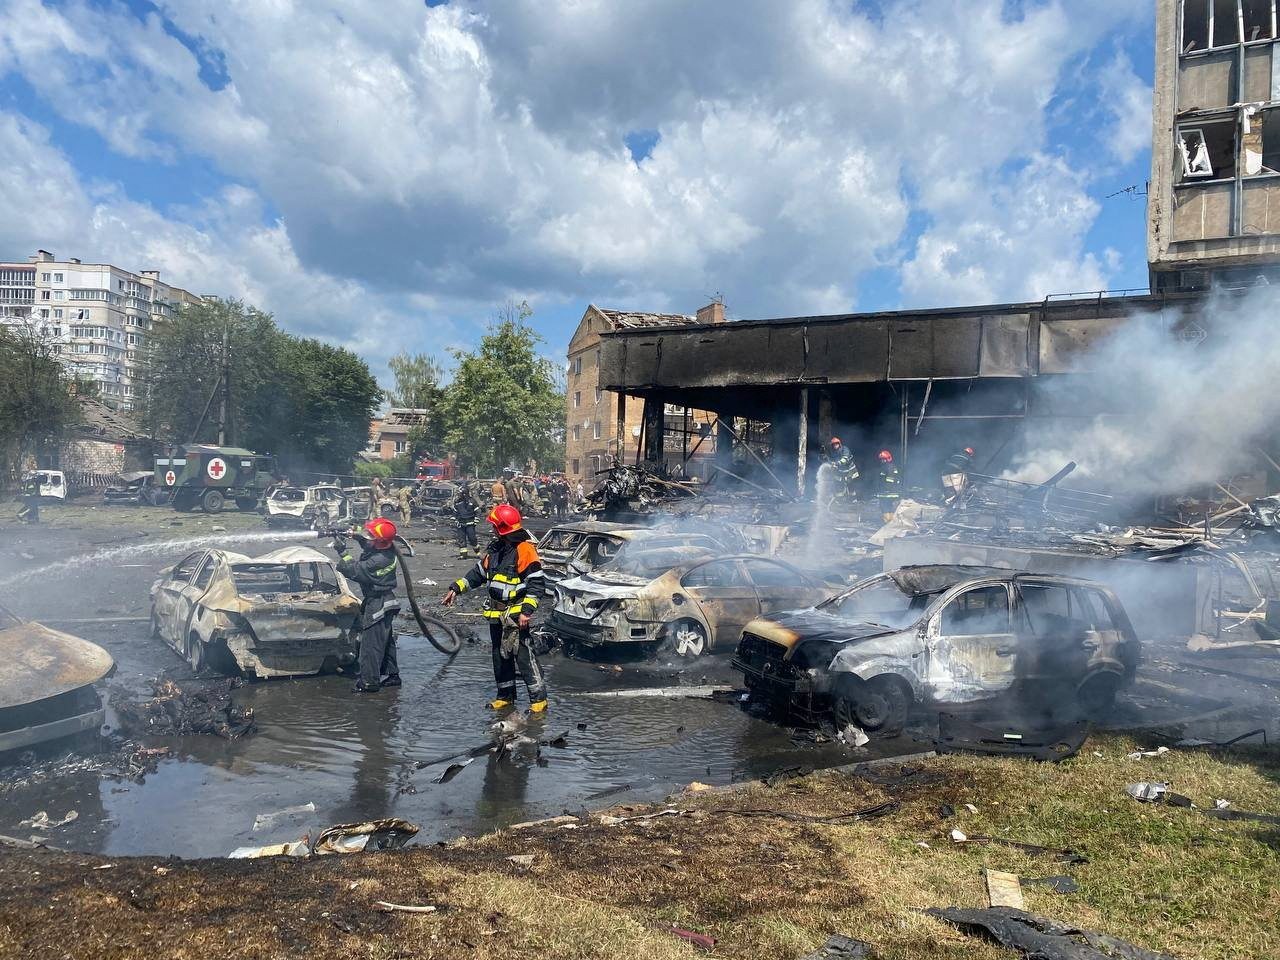  El operativo provocó un incendio que se propagó y envolvió a 50 autos en un estacionamiento adyacente.
